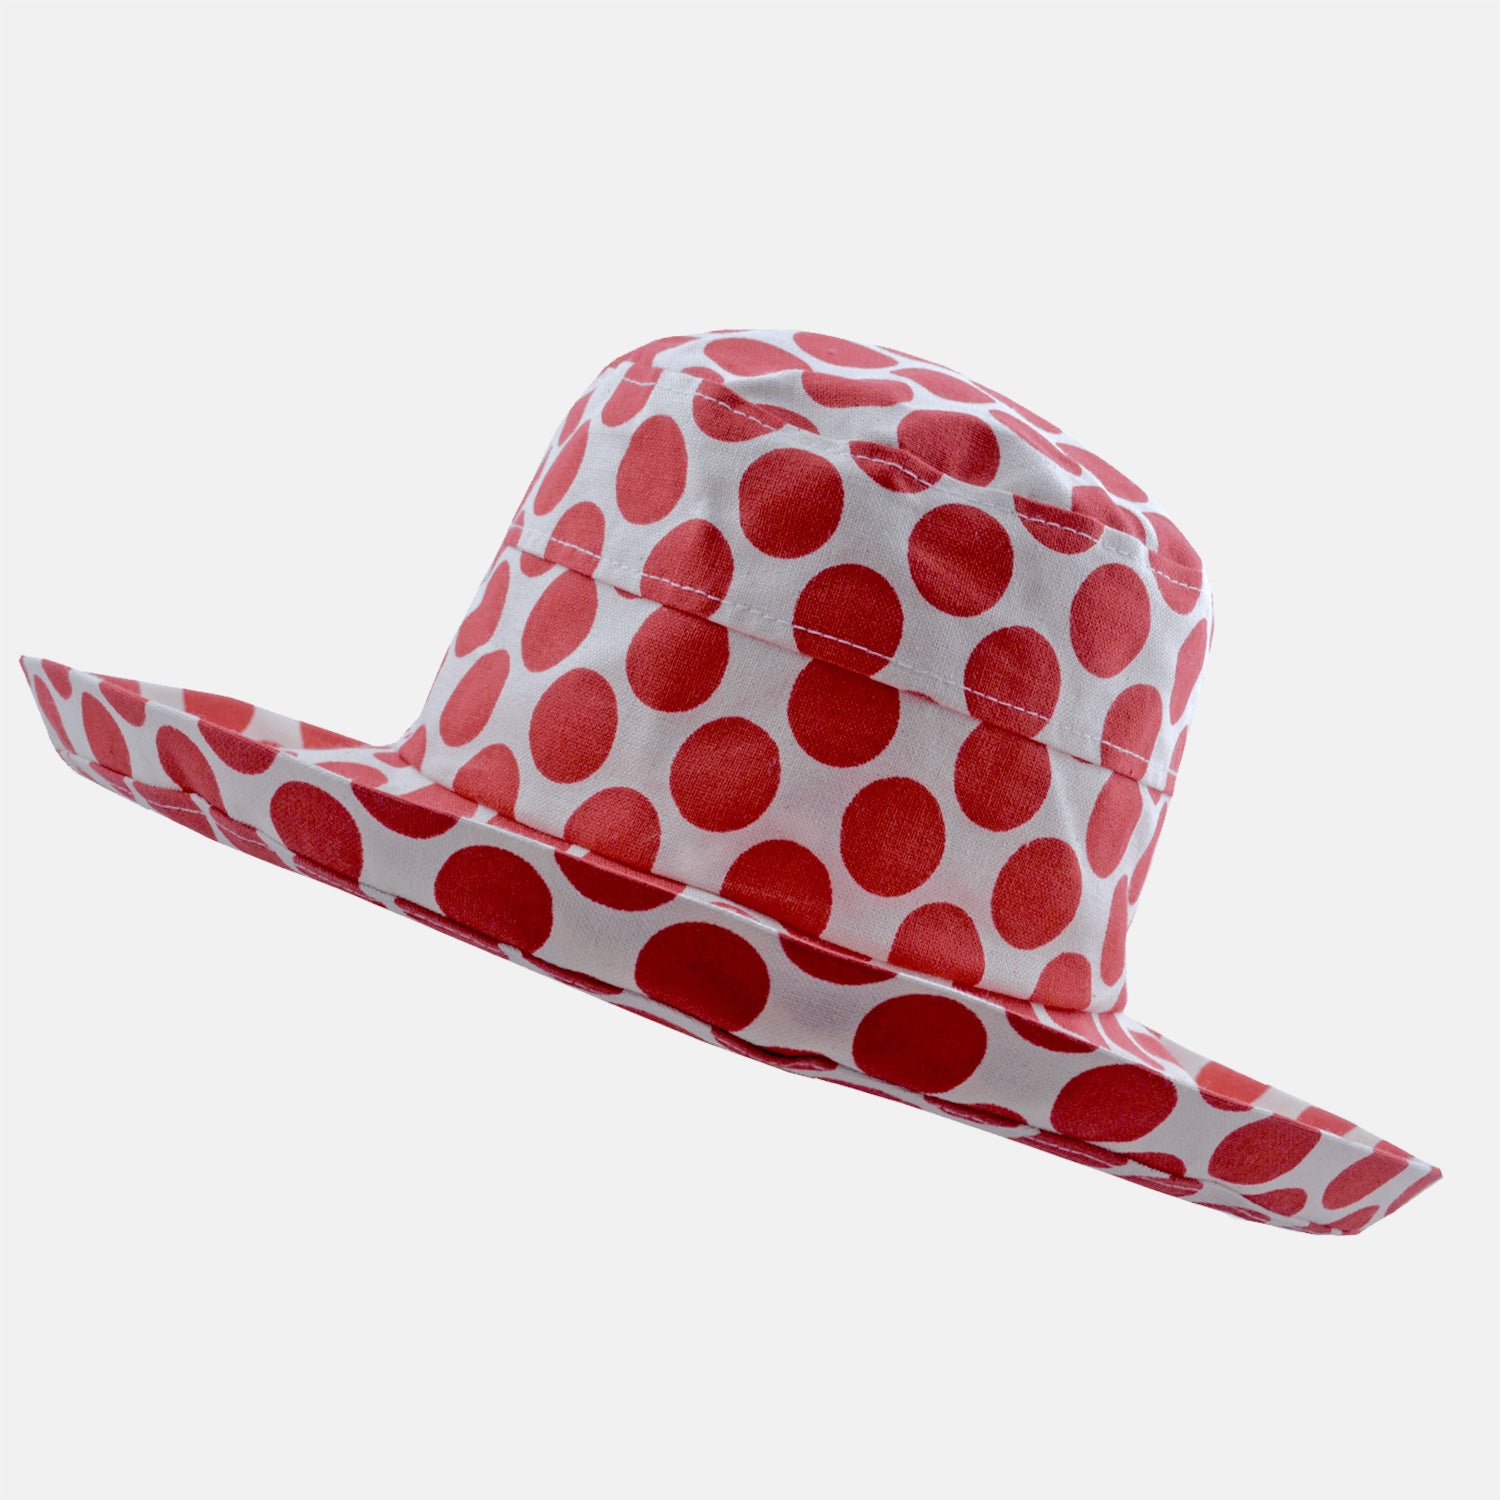 Spotty Cotton Sun Hat - Large Brim – Proppa Toppa Hats